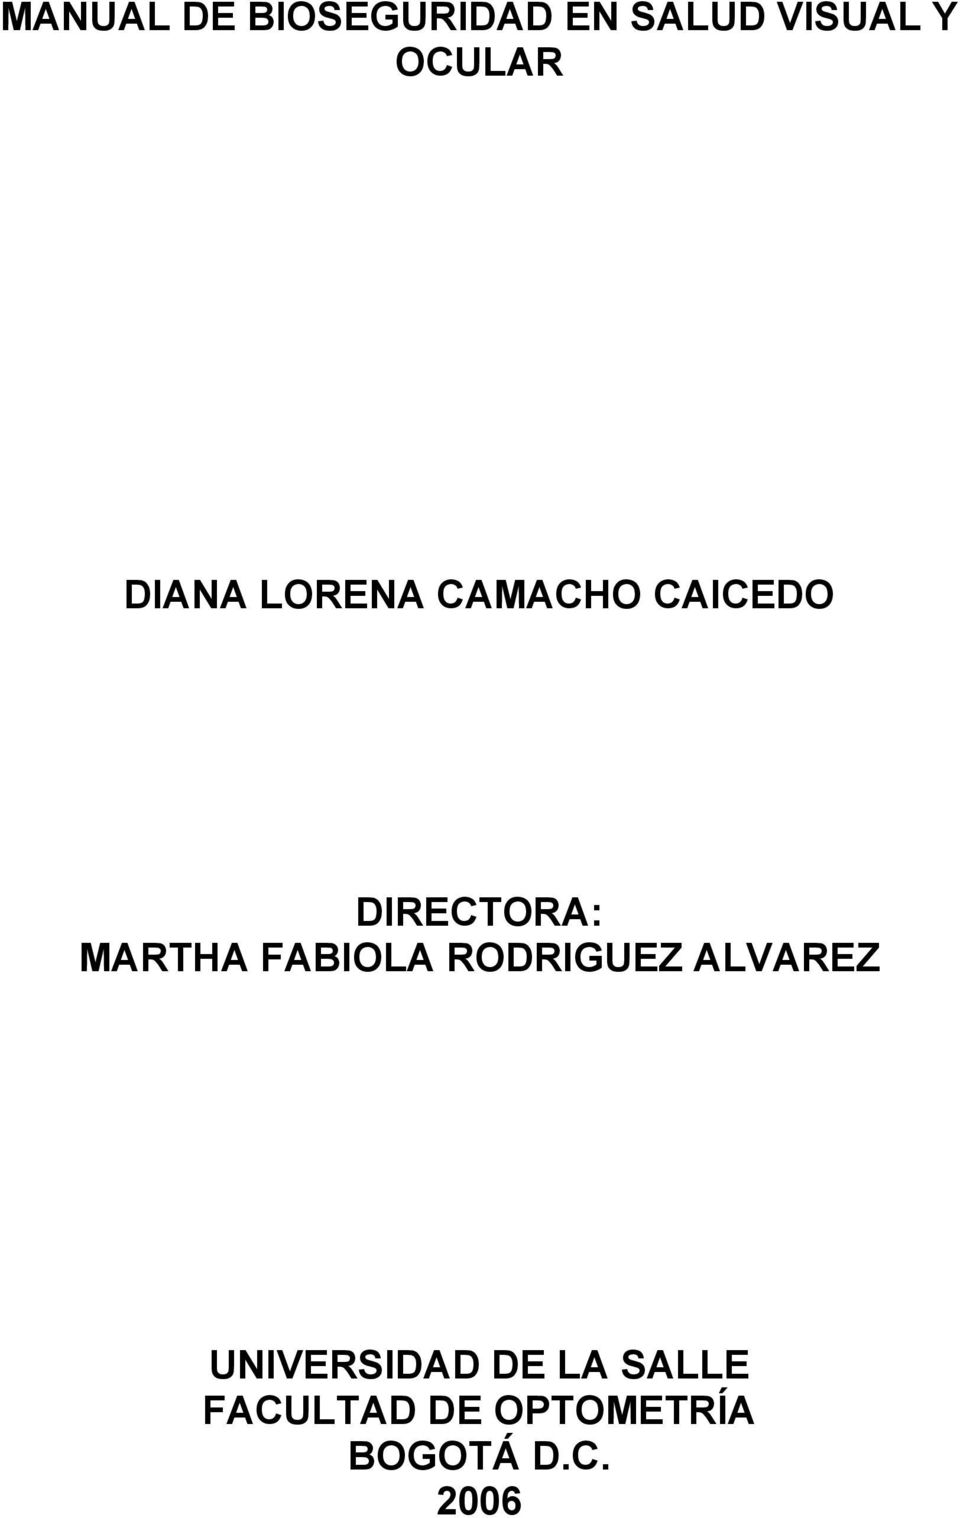 DIRECTORA: MARTHA FABIOLA RODRIGUEZ ALVAREZ